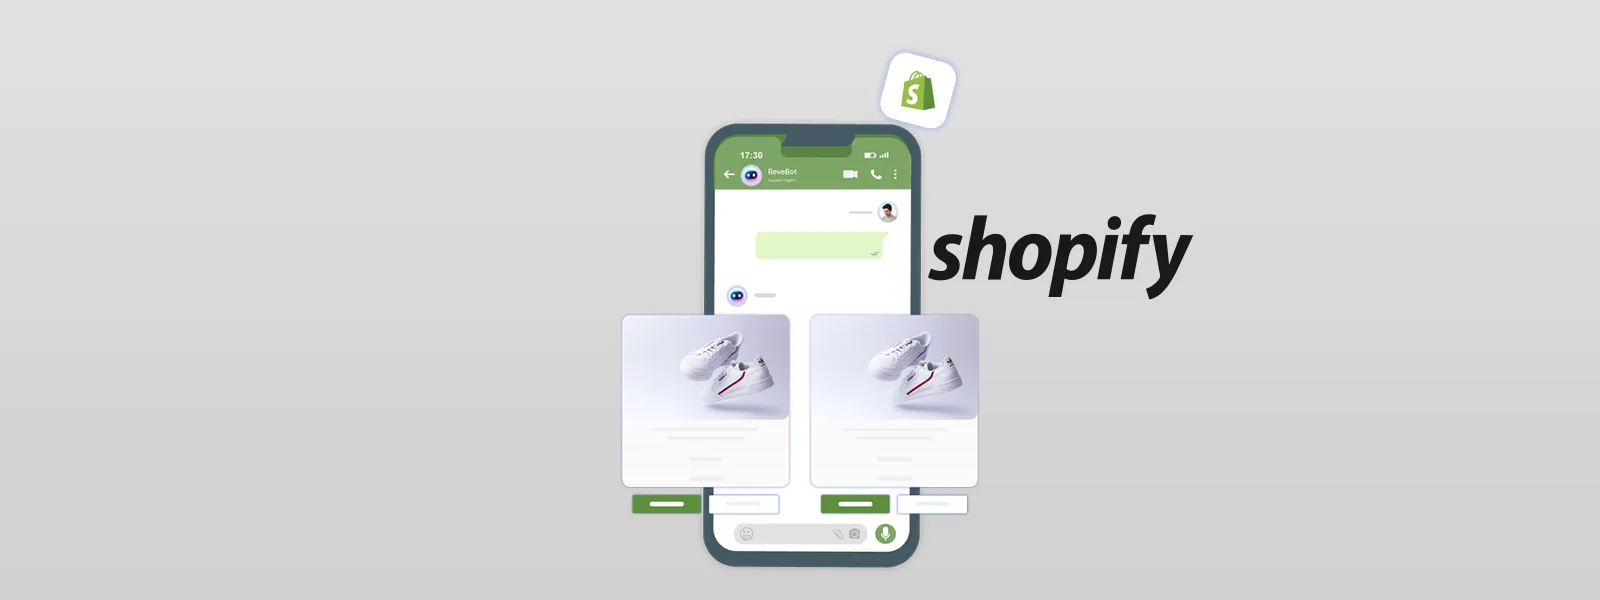 Shopify chatbot